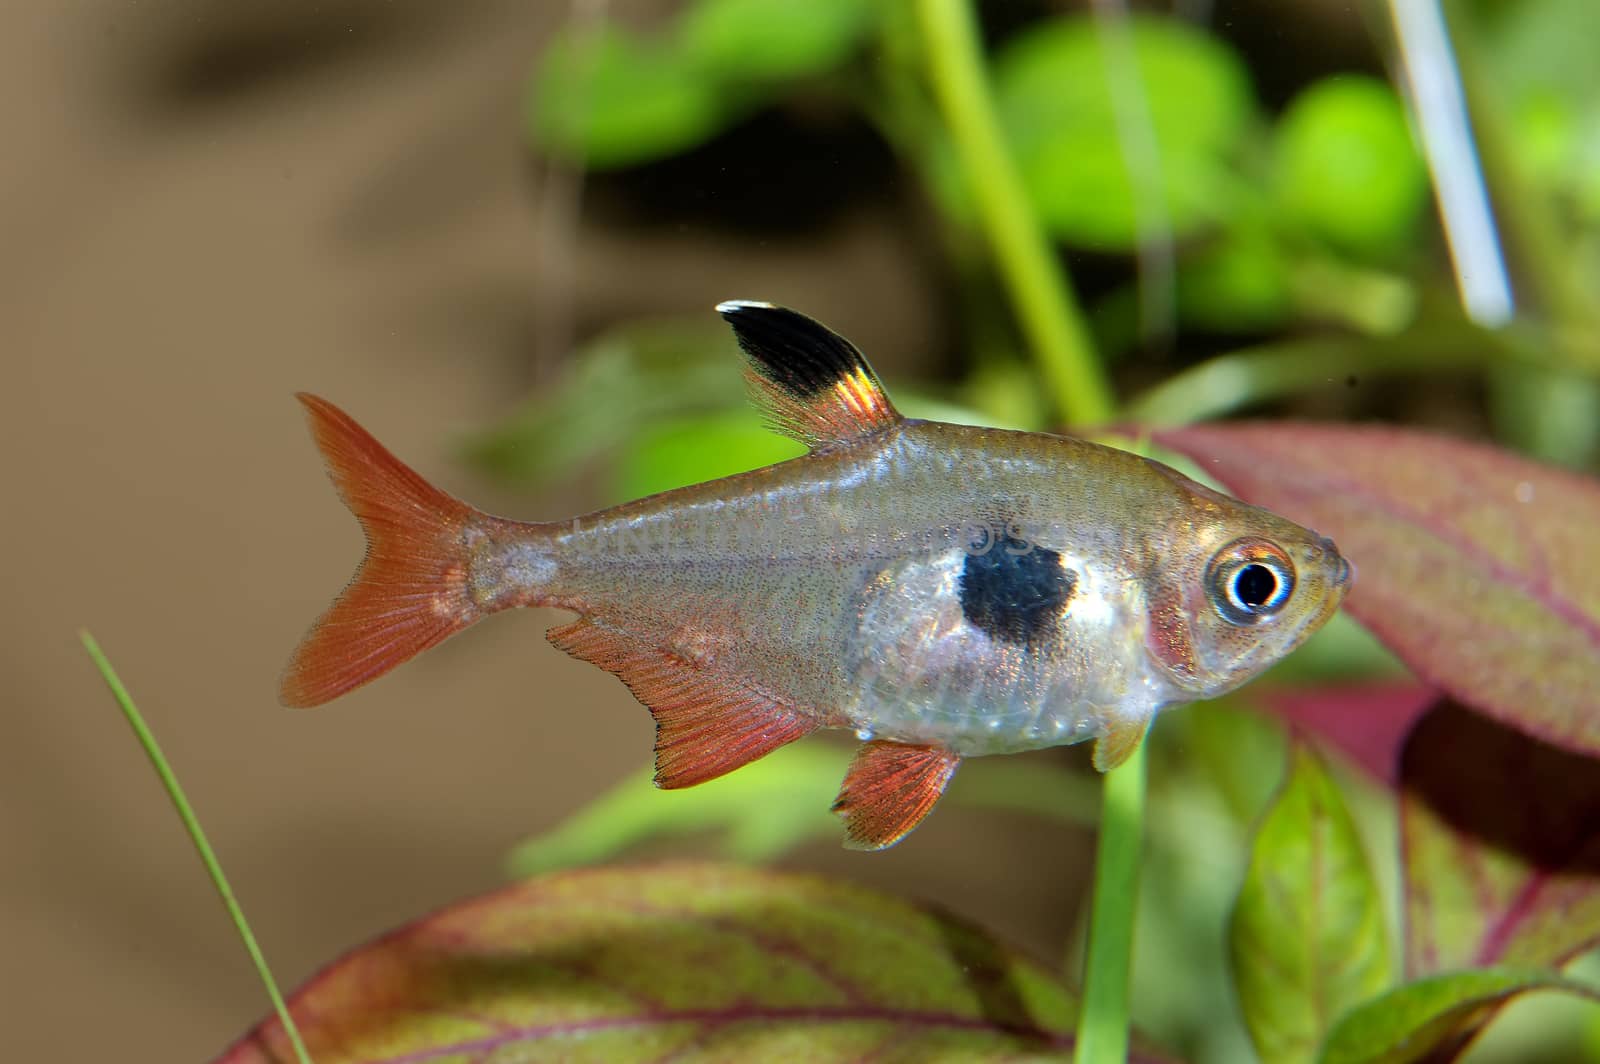 Aquarium fish from genus Hyphessobrycon.